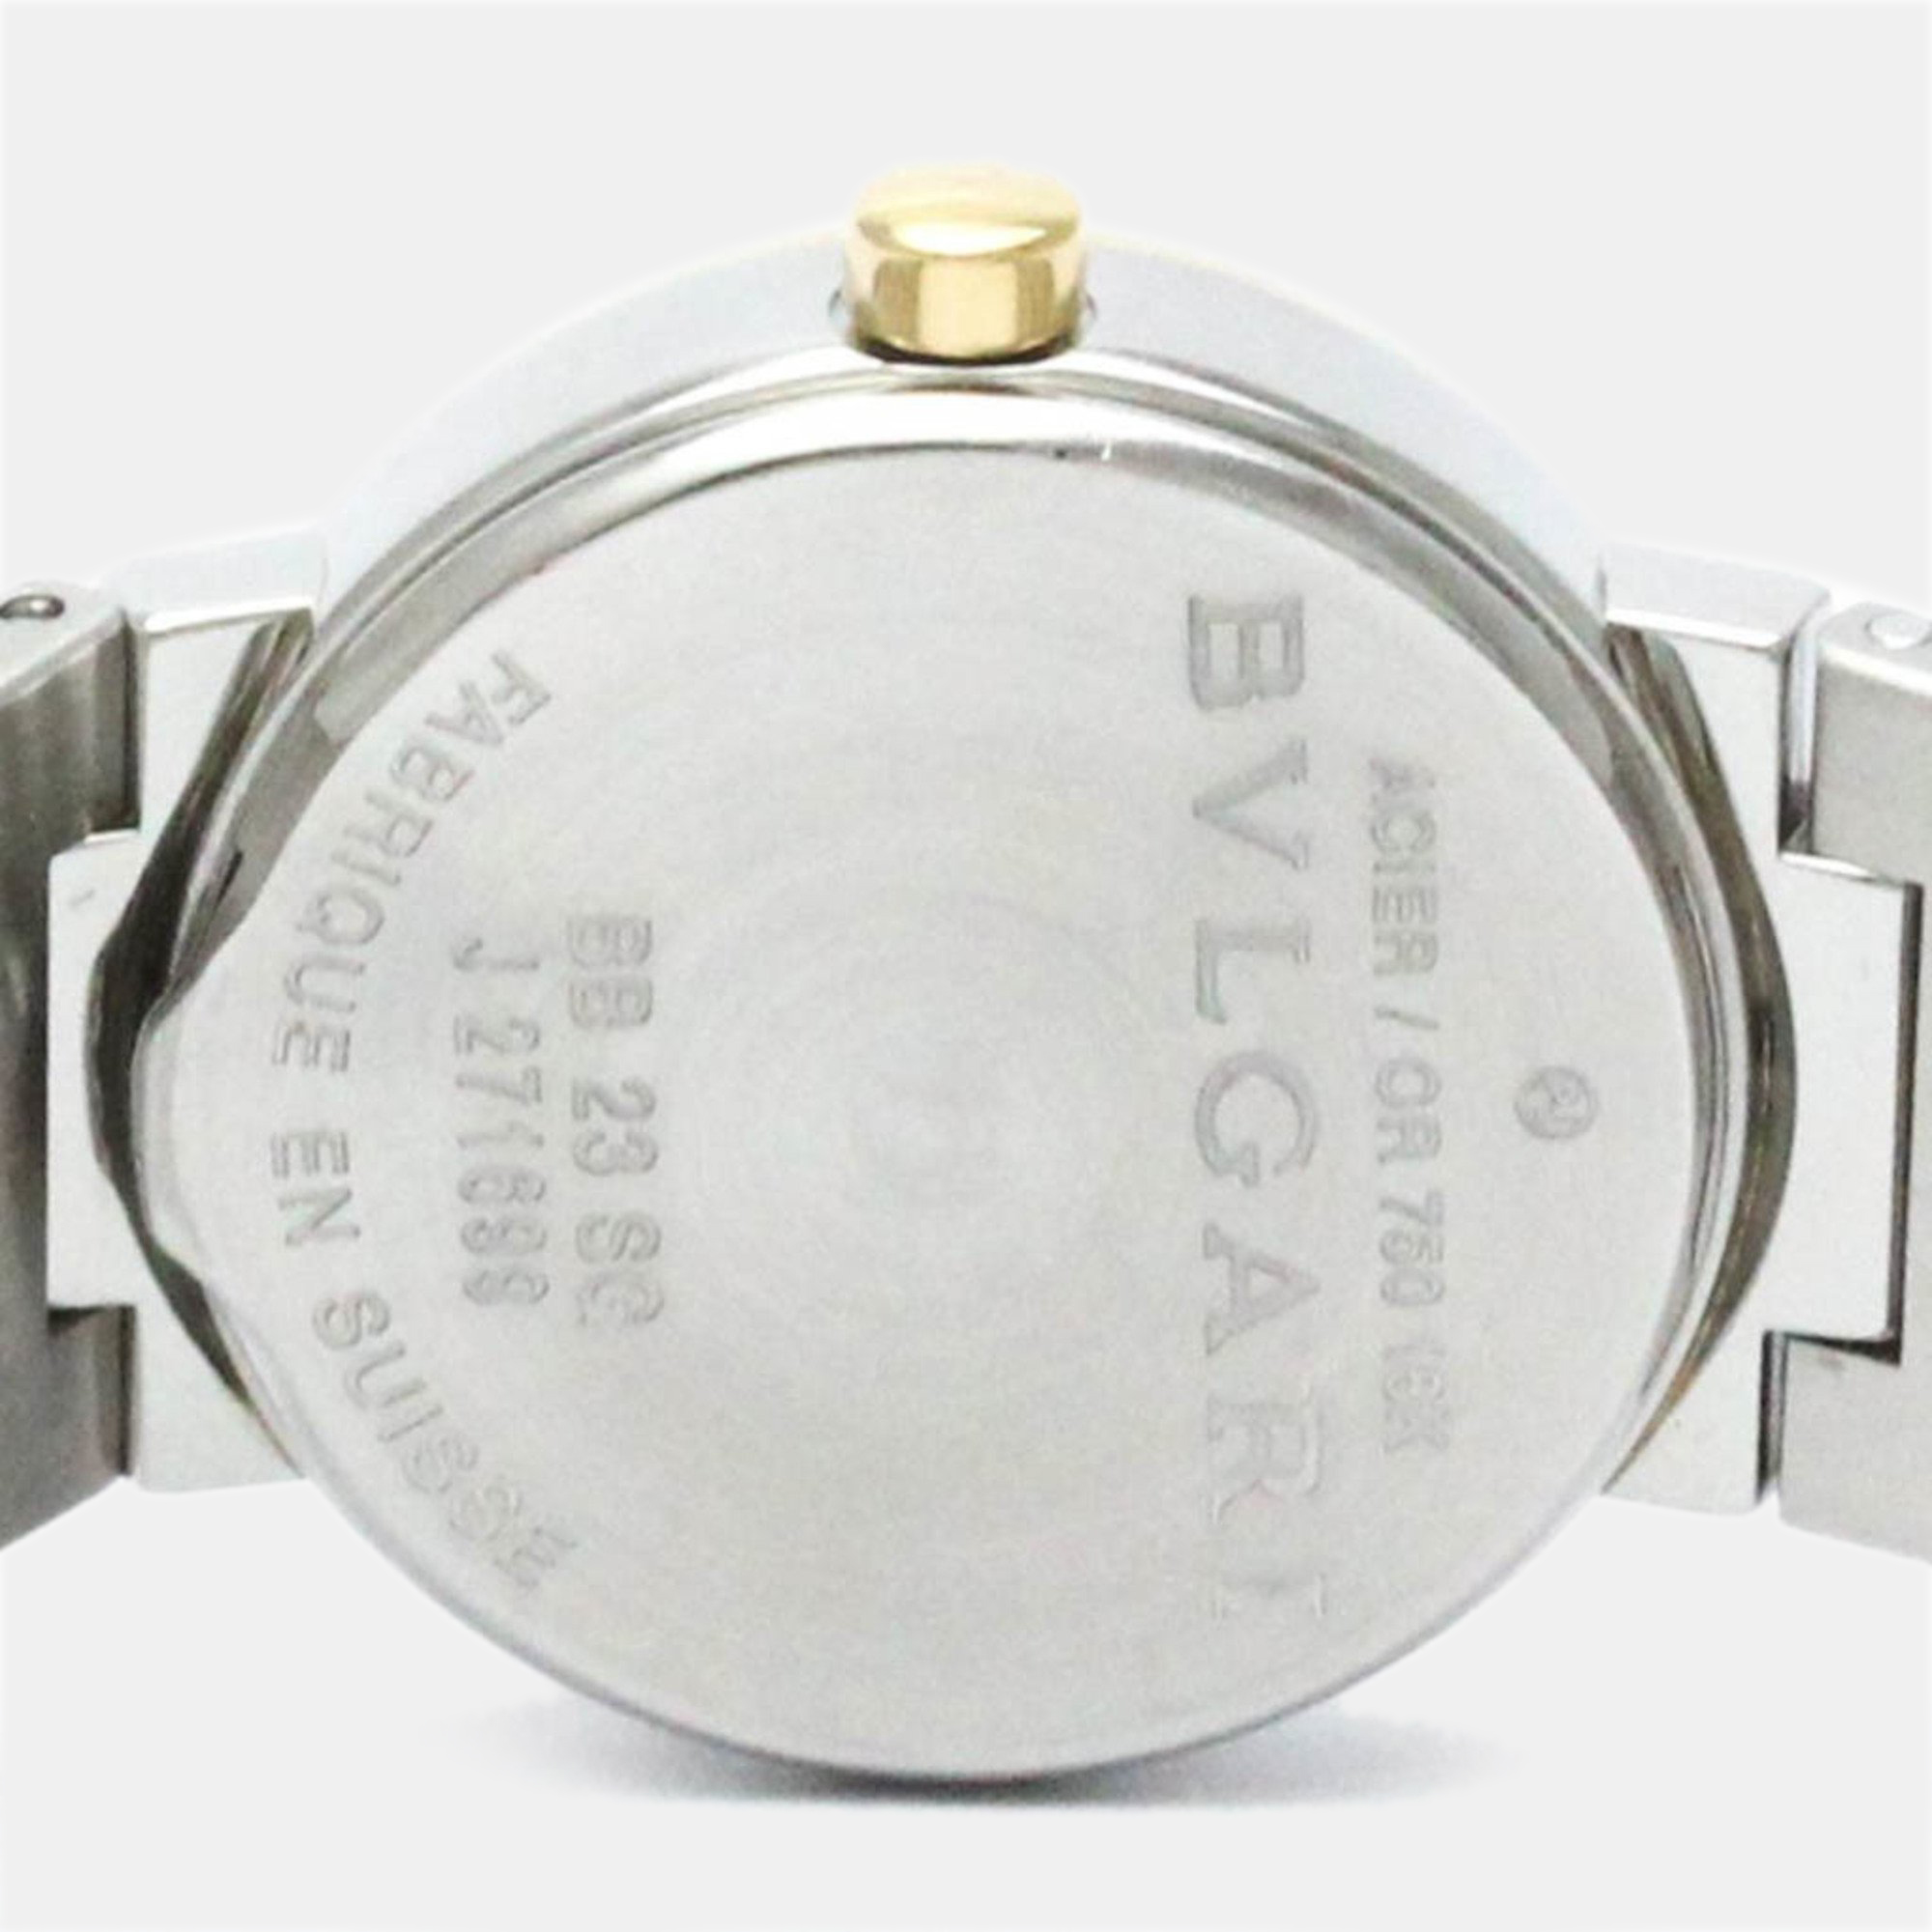 Bvlgari Black 18k Yellow Gold And Stainless Steel Bvlgari Bvlgari BB23SG Quartz Women's Wristwatch 23 Mm